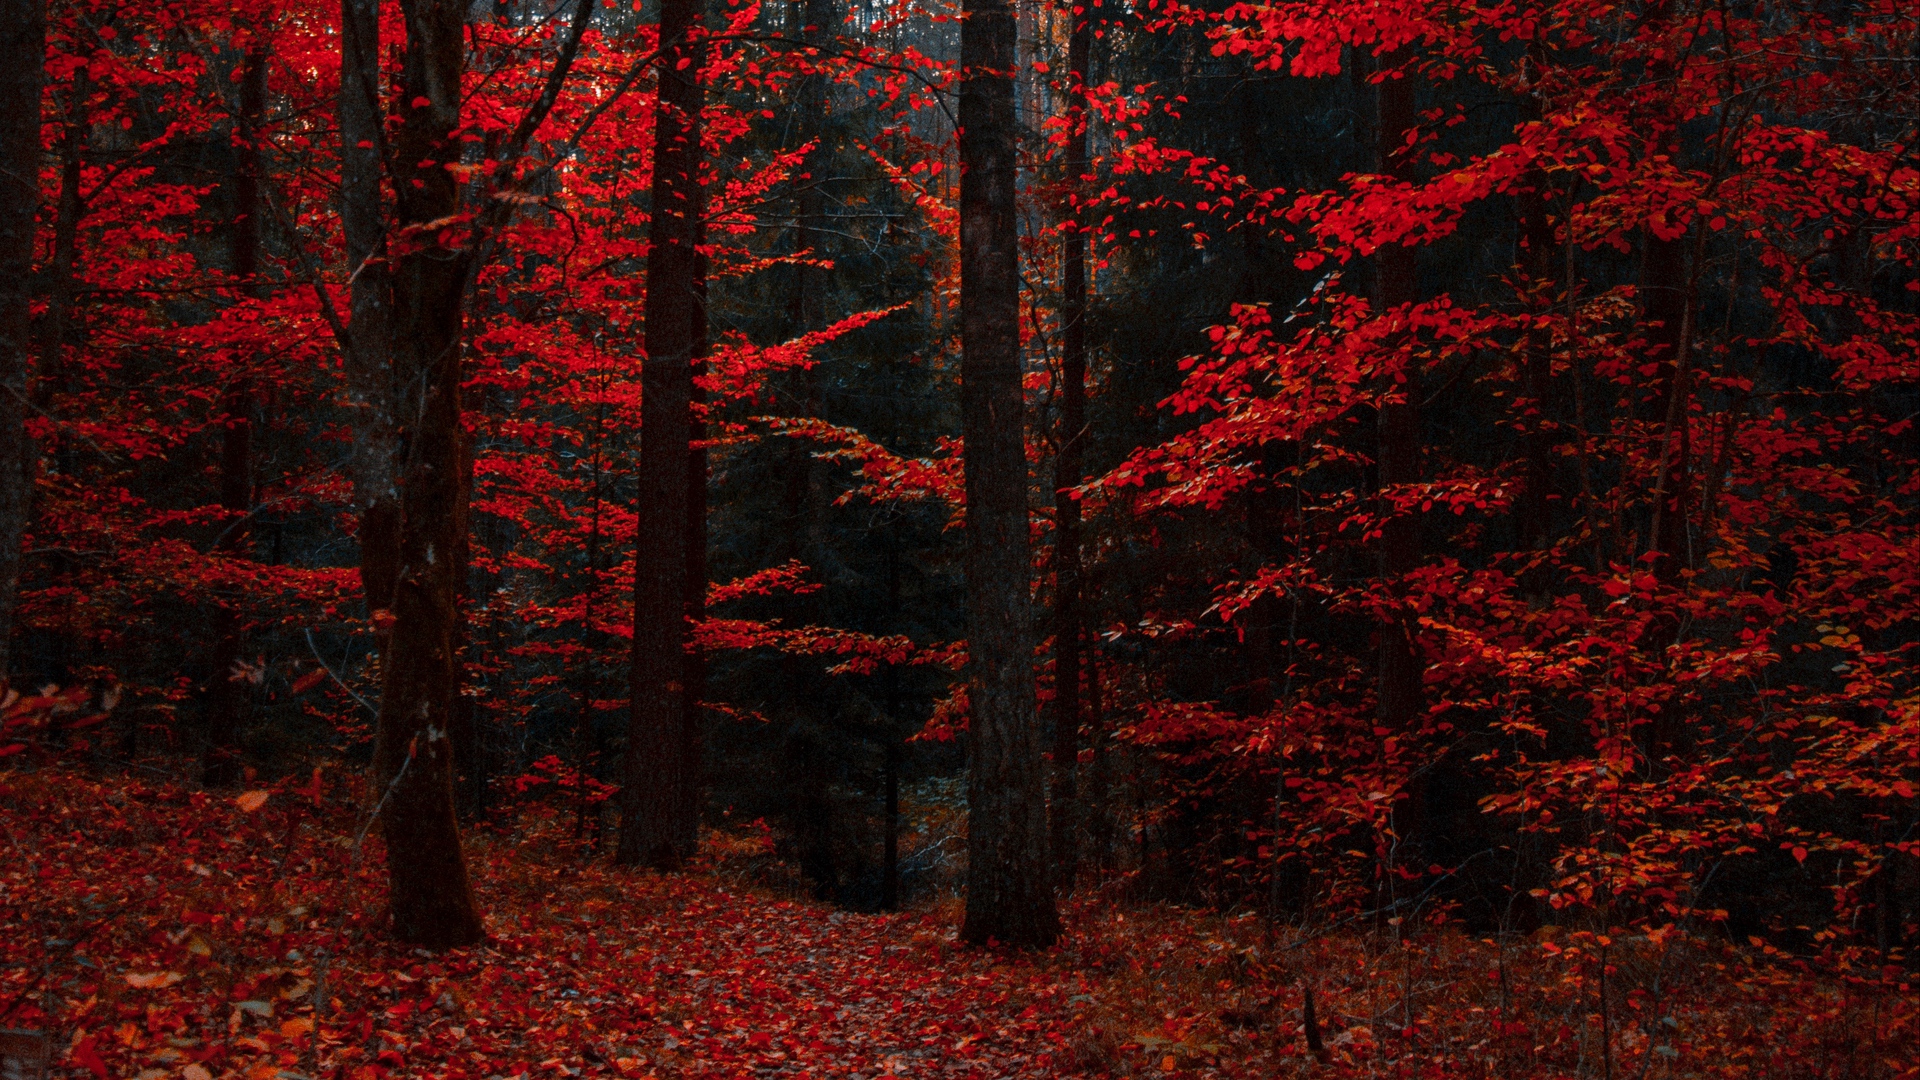 Forest Woods Autumn  Free photo on Pixabay  Pixabay